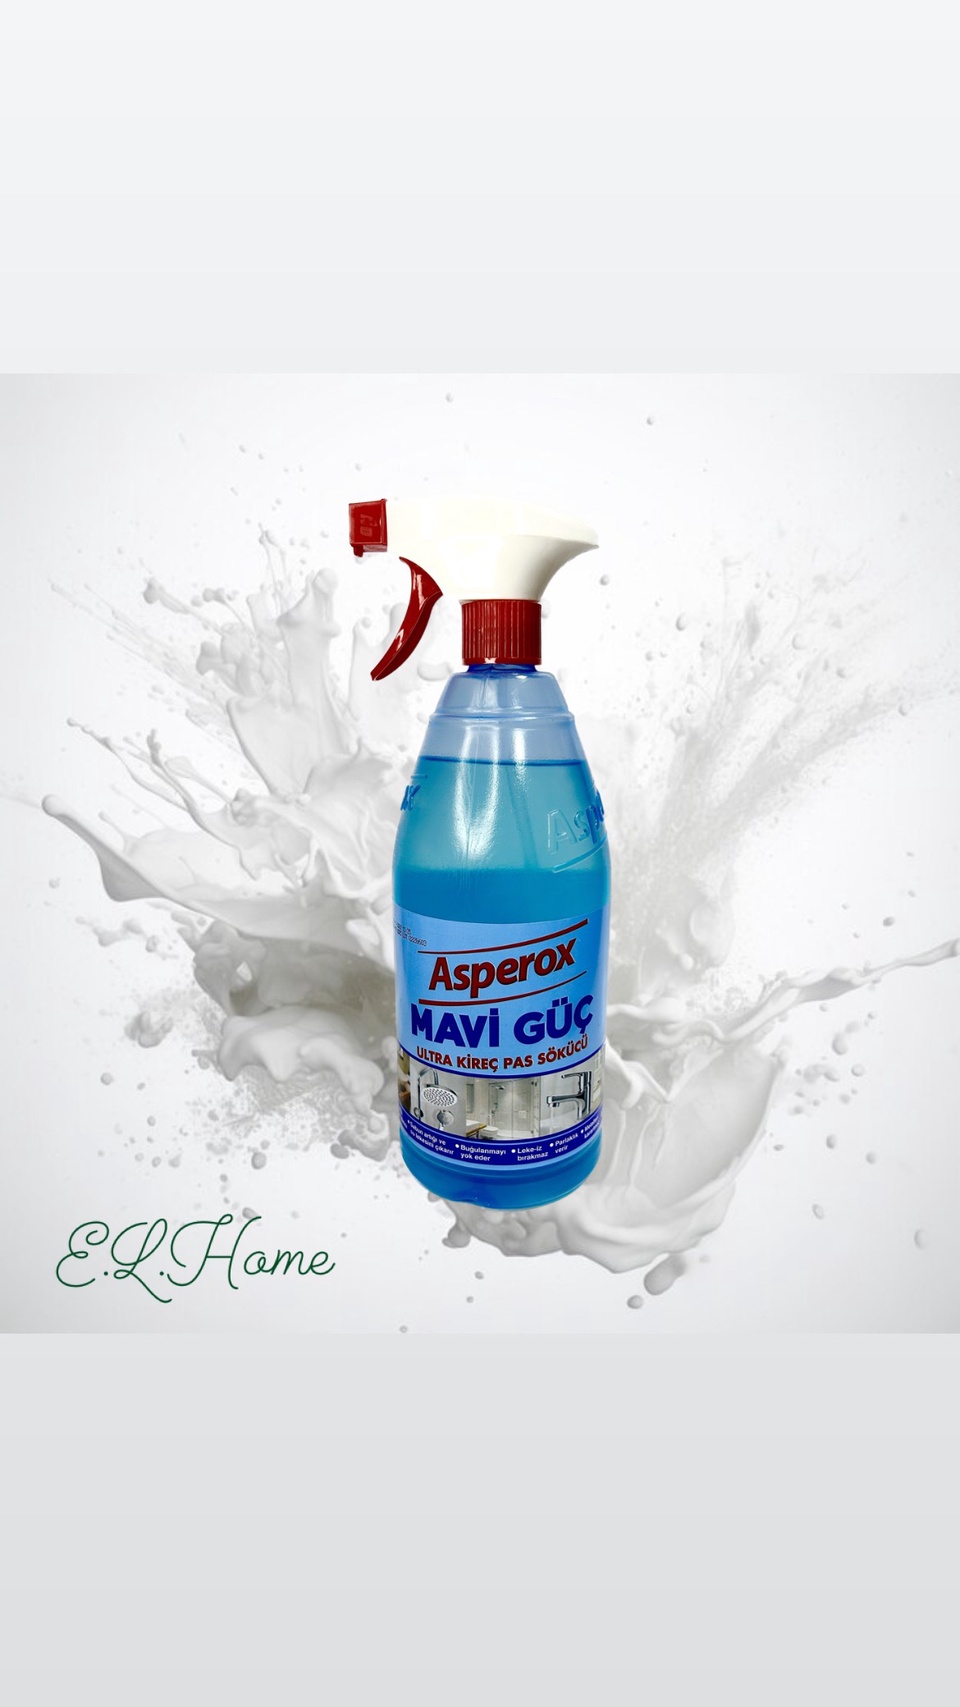 Asperox Magic Blue - универсальное чистящее средство для удаления ржавчины и известкового налета для кухни, ванной, сантехники -1000ml - 350 ₽, заказать онлайн.